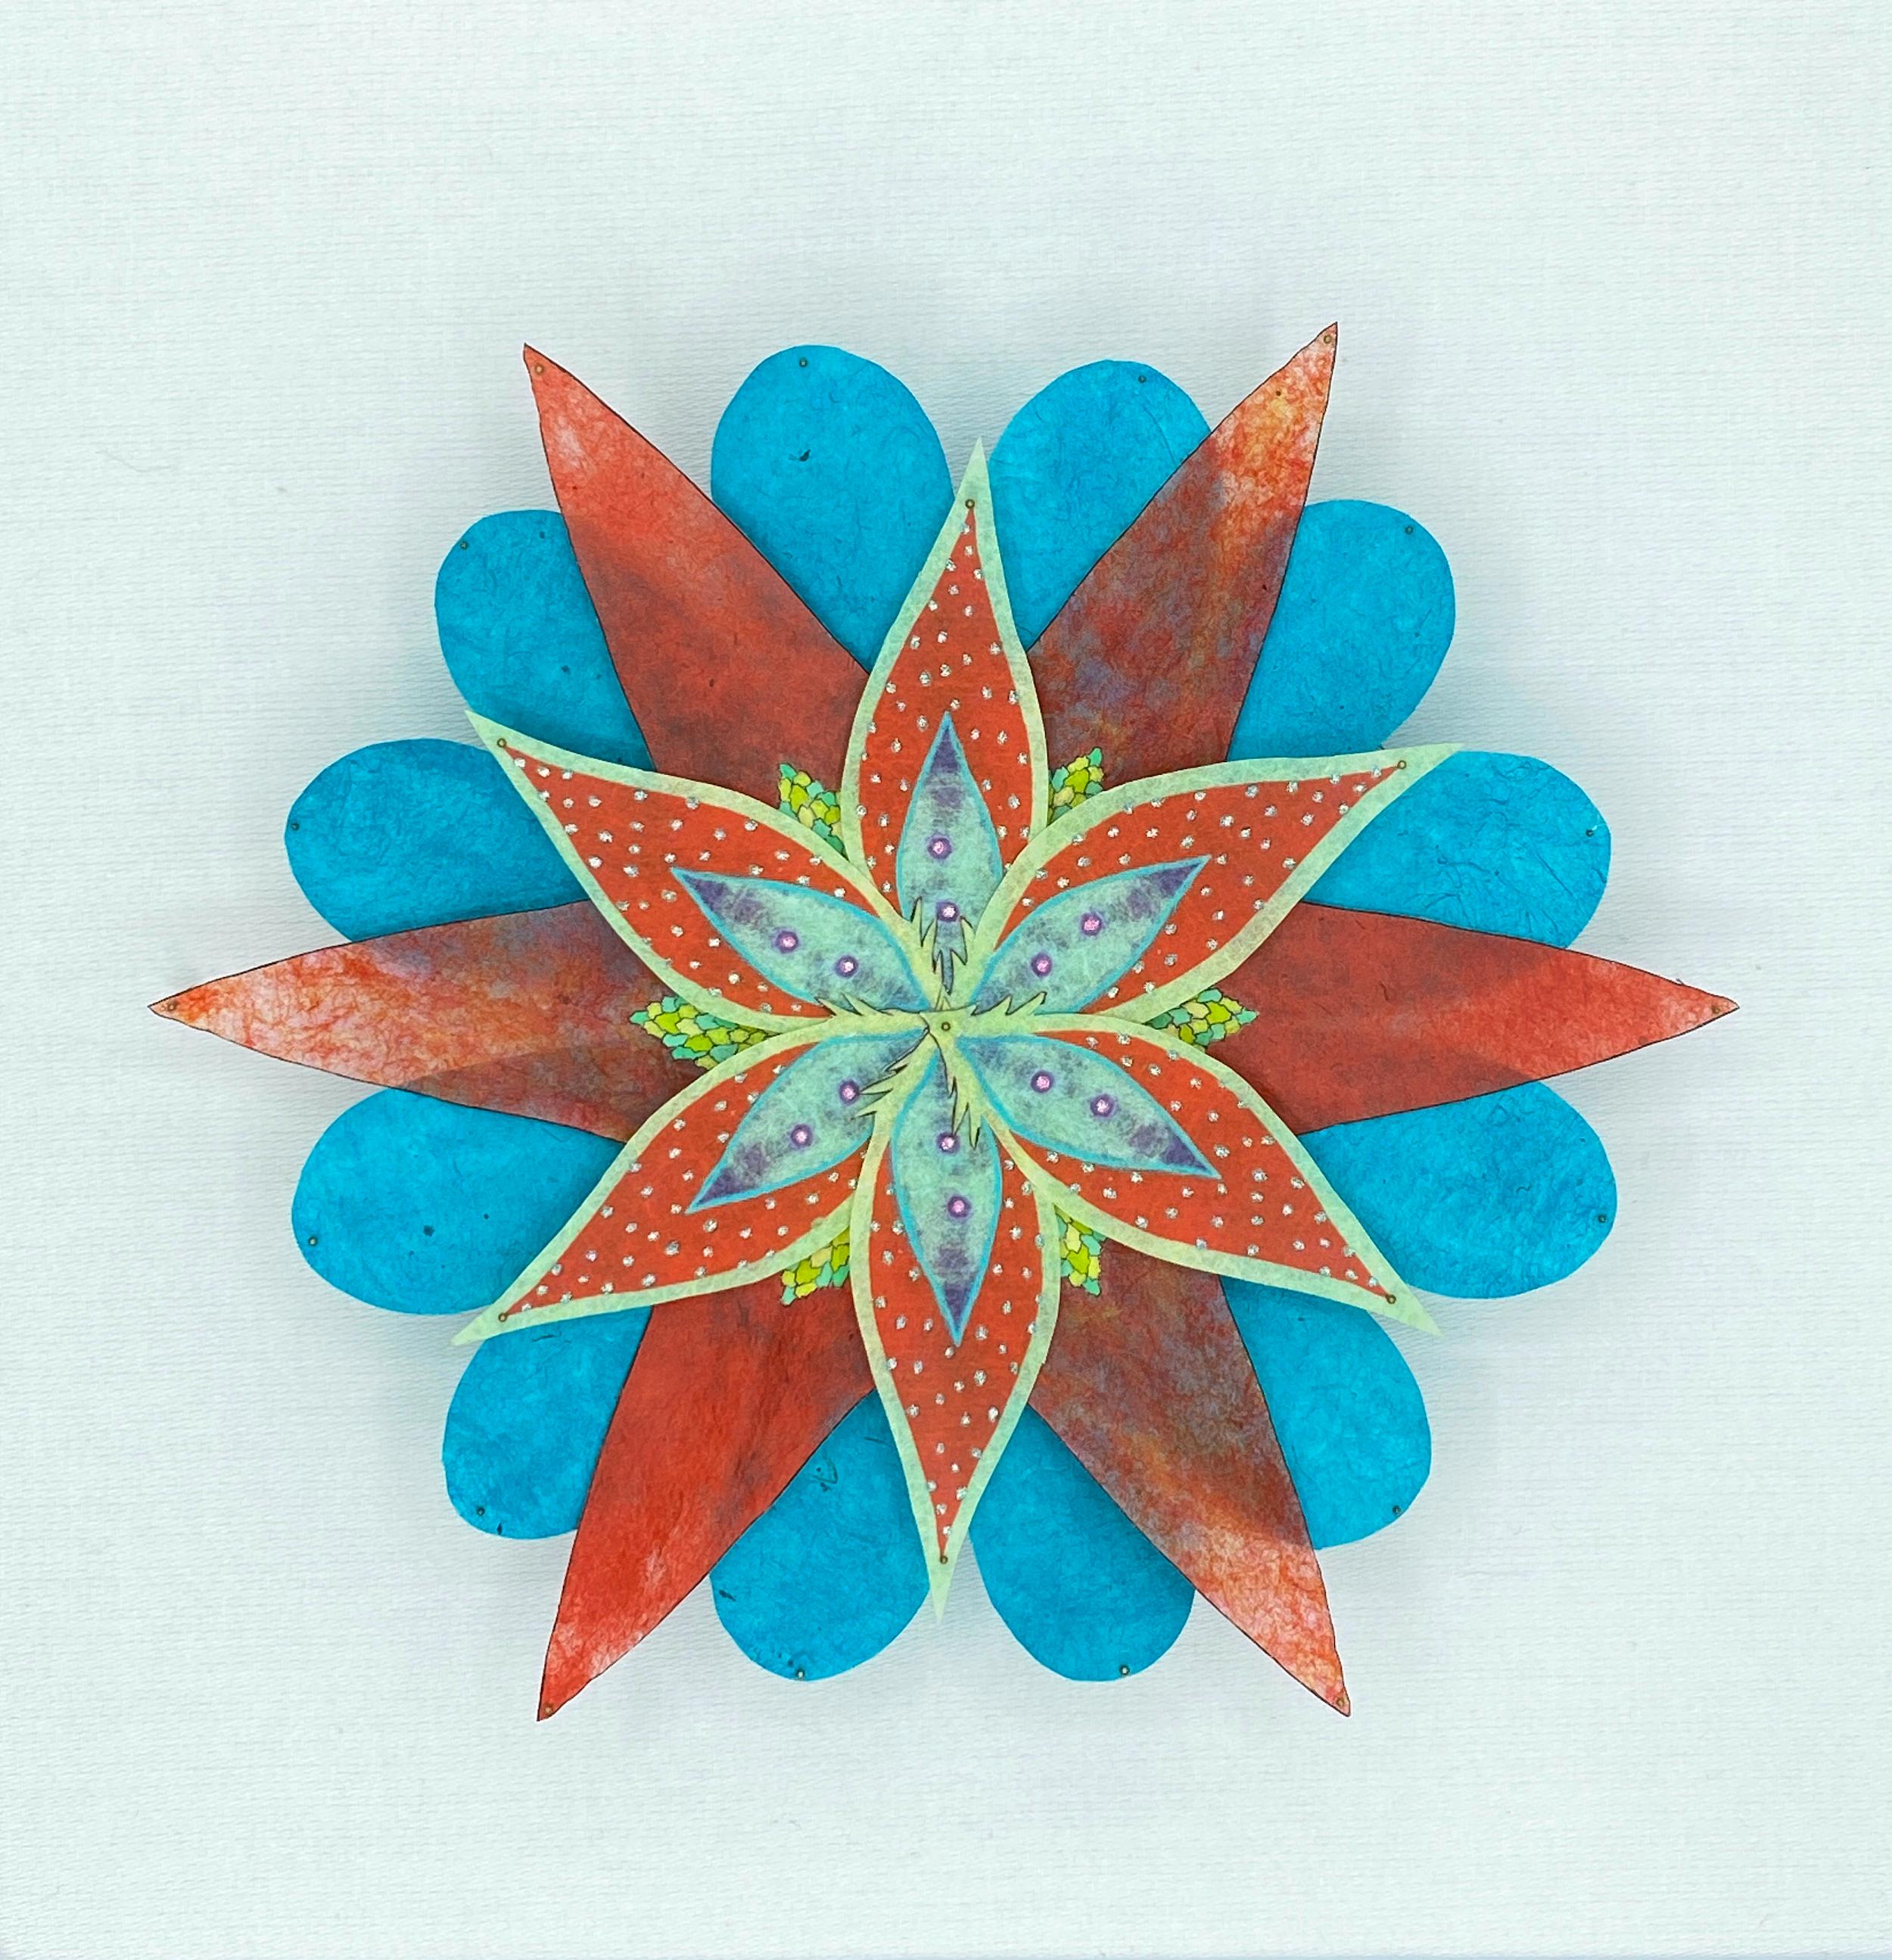 Jill Parisi Abstract Sculpture – Fanfare Star, Teal Blau, Rot, Bunte botanische Blumen-Wandskulptur aus Papier